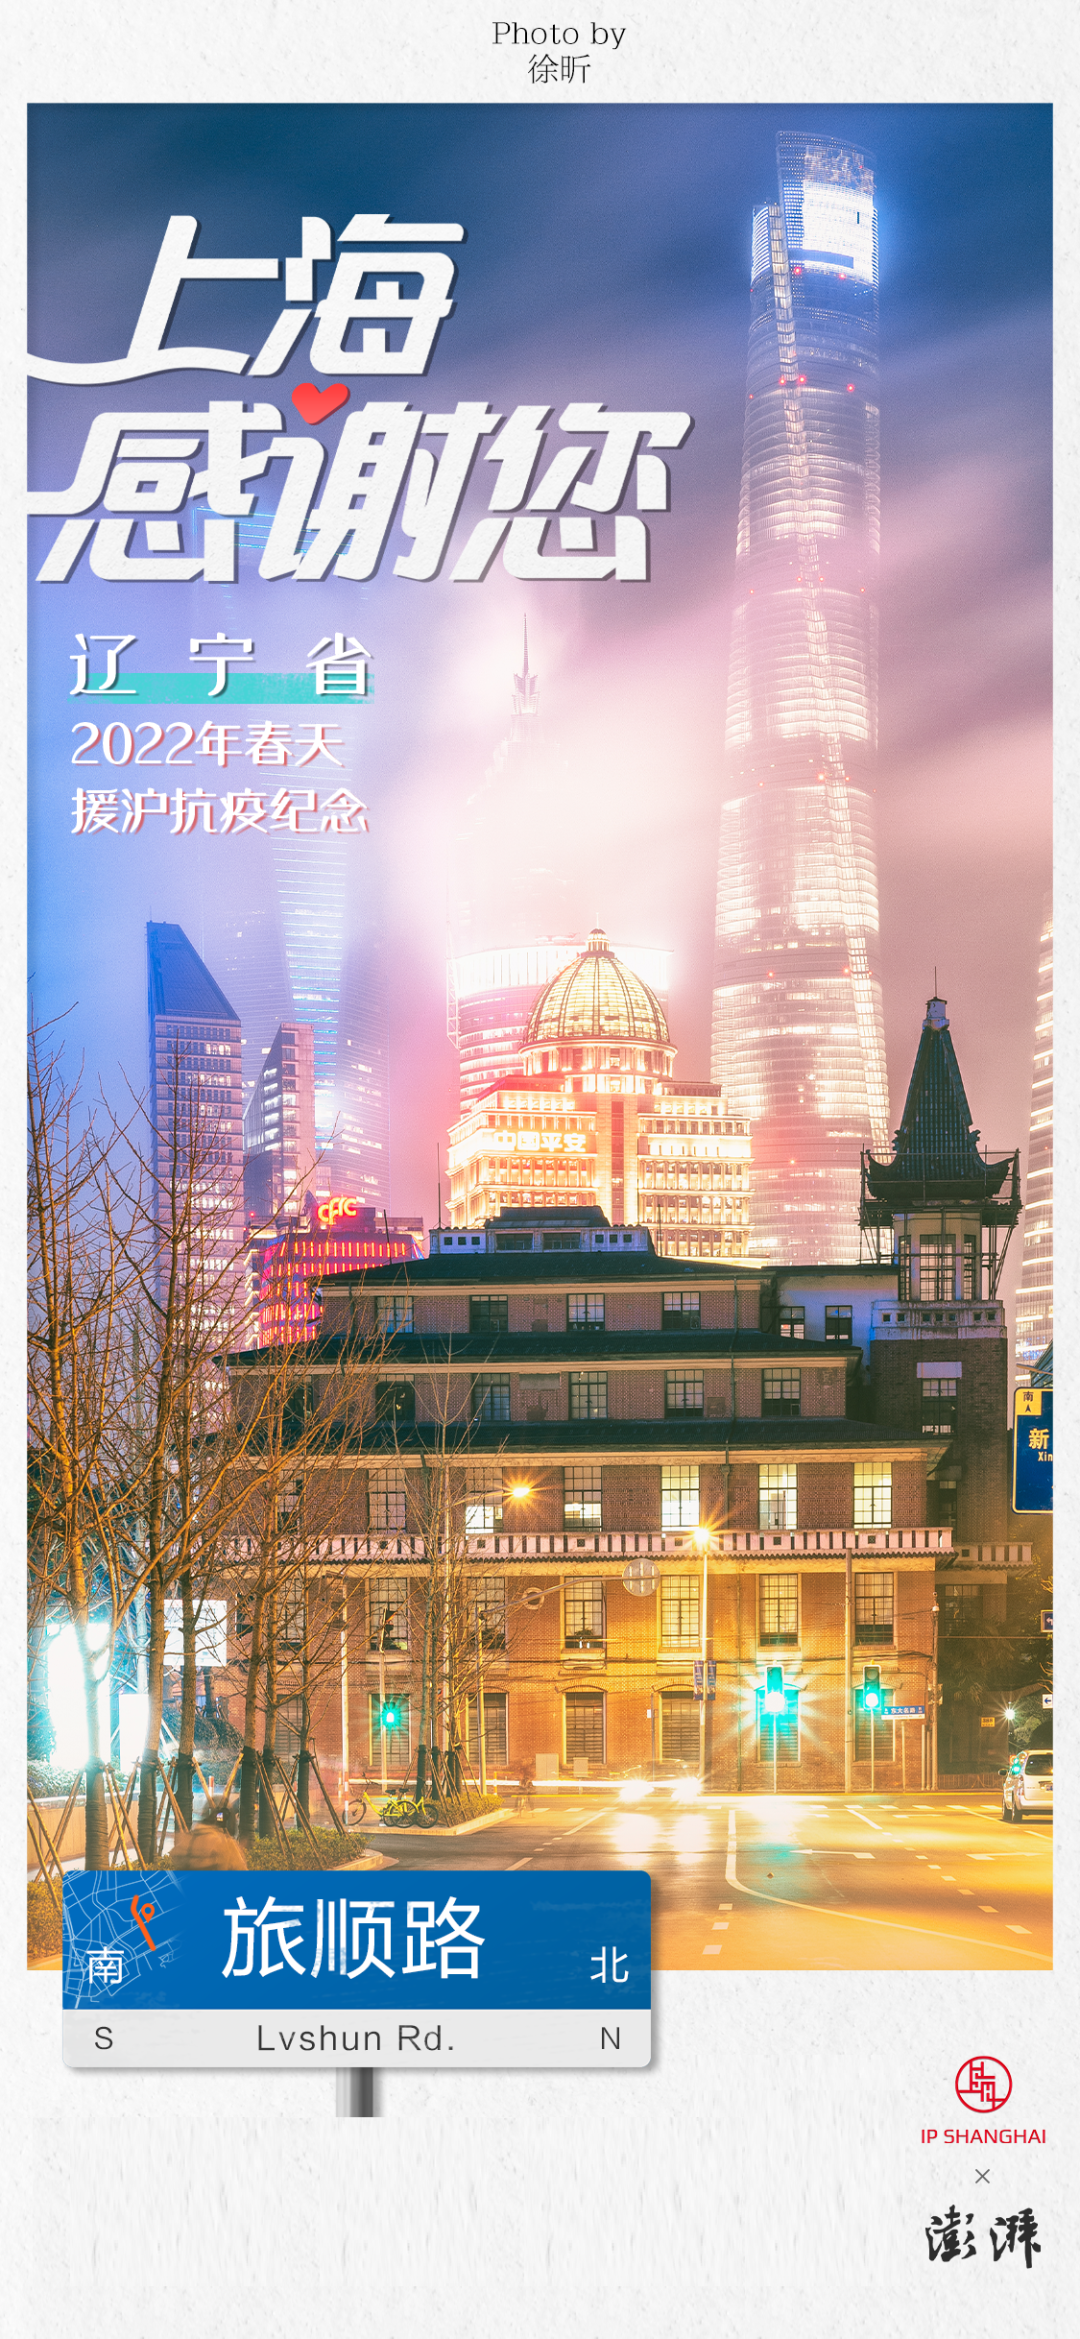 资料：澎湃新闻（记者：赵冠群、宋一宁、薛晶、施佳慧）、上海城市形象资源共享平台（IP SHANGHAI）